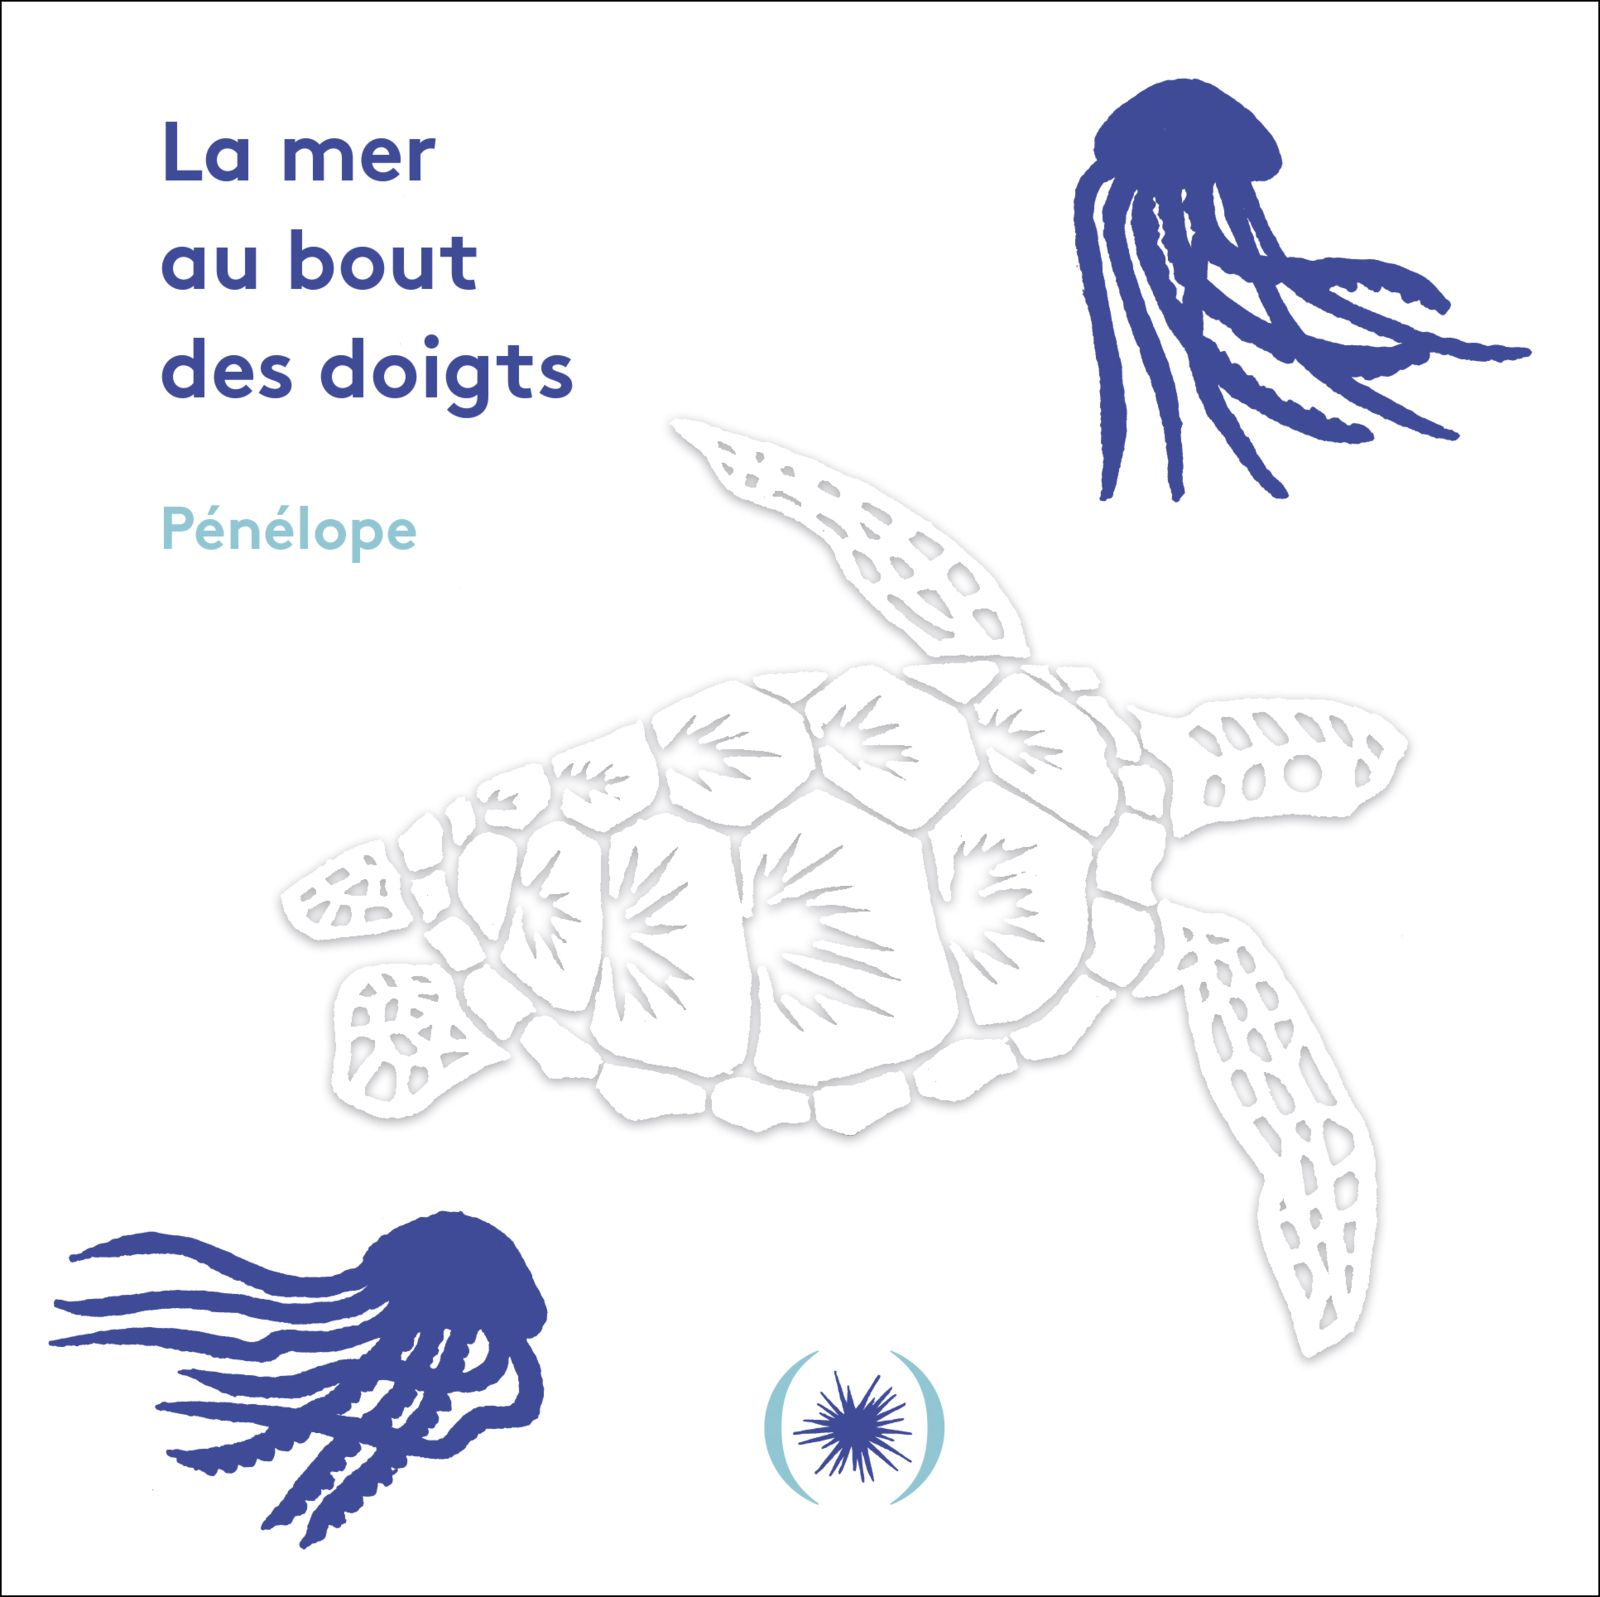 Pénélope "La mer au bout des doigts", éditions des Grandes Personnes